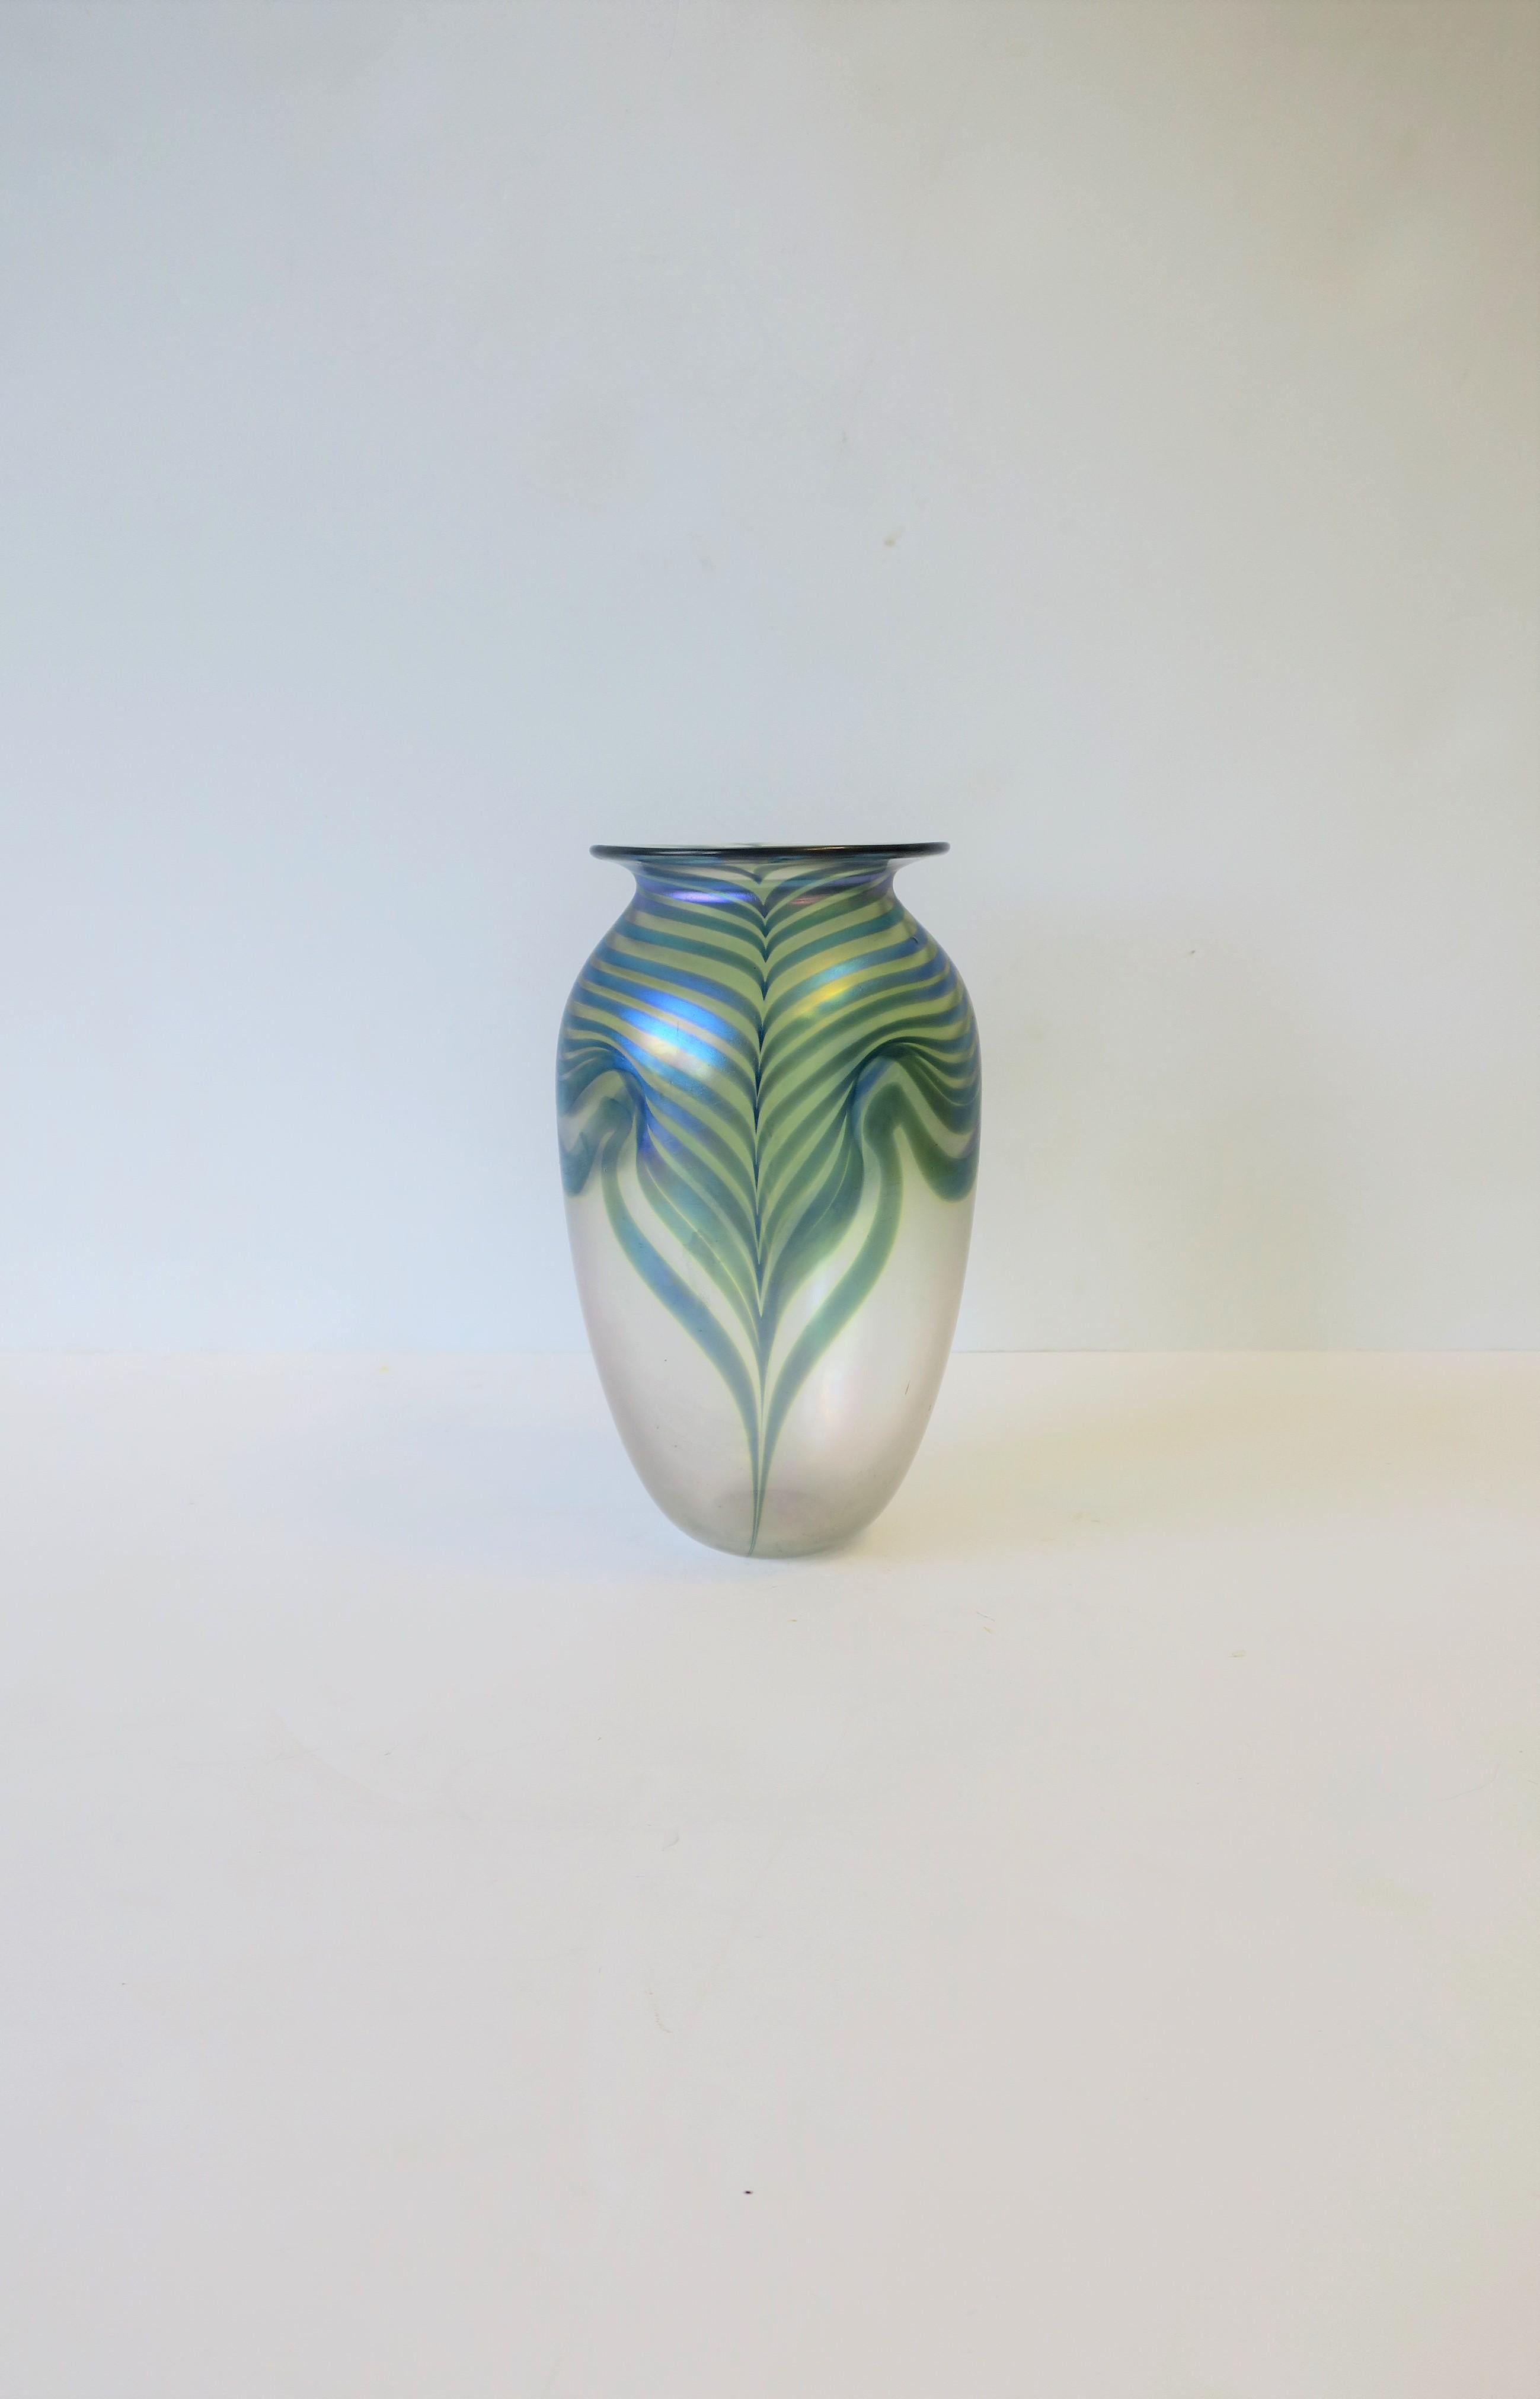 Très beau vase en verre d'art contemporain dans le style Art nouveau, par l'artiste Robert Eickholt, vers les années 1980. Le vase est signé 